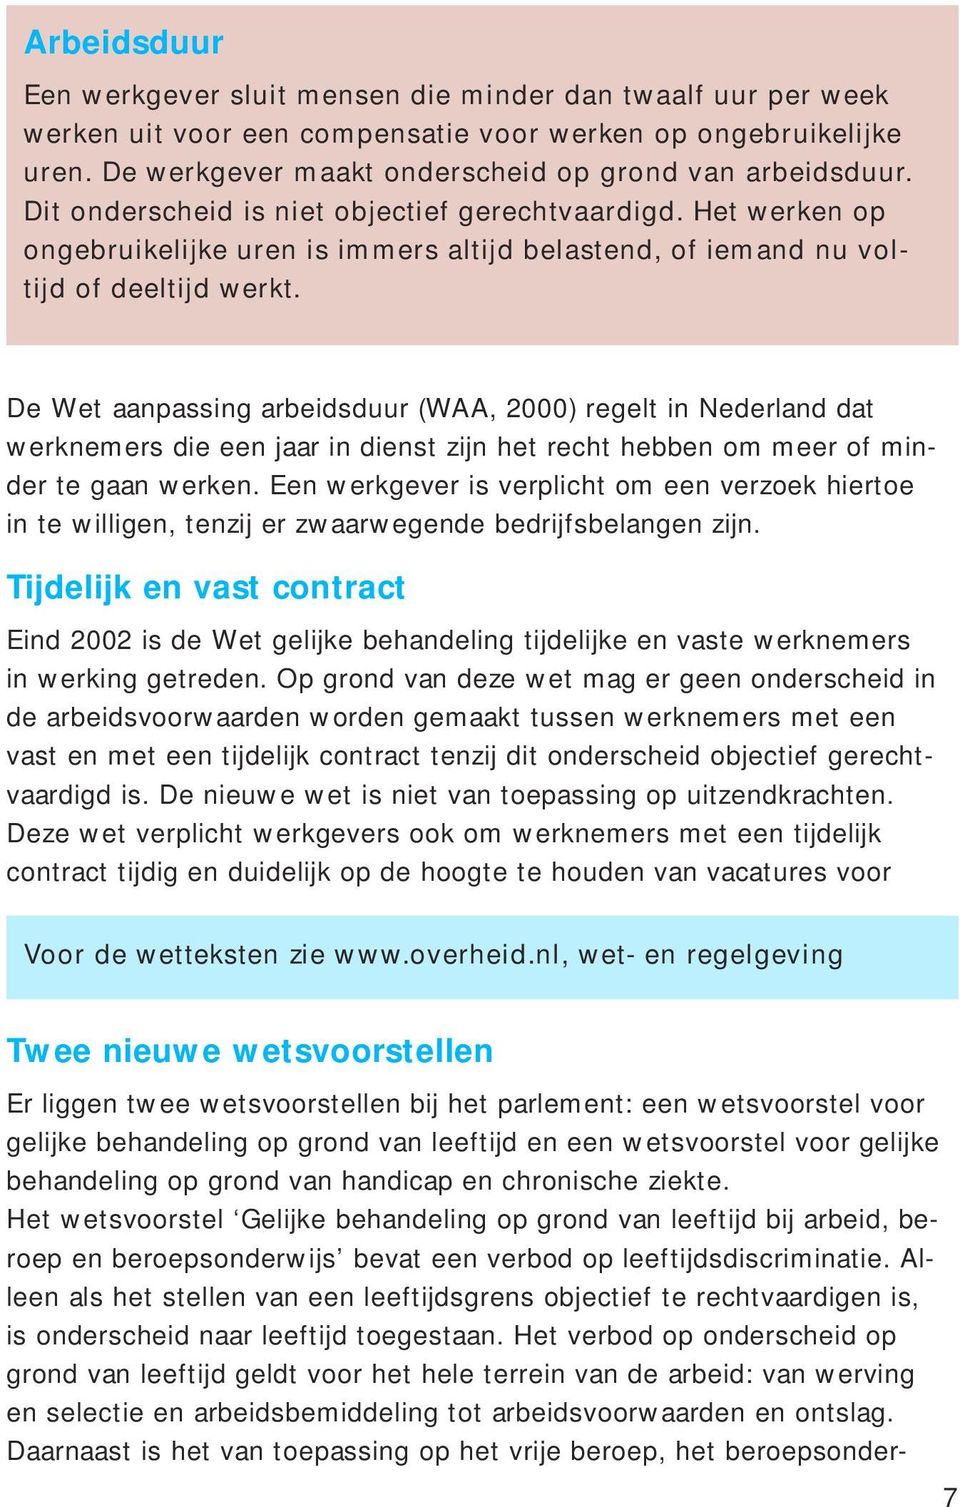 De Wet aanpassing arbeidsduur (WAA, 2000) regelt in Nederland dat werknemers die een jaar in dienst zijn het recht hebben om meer of minder te gaan werken.